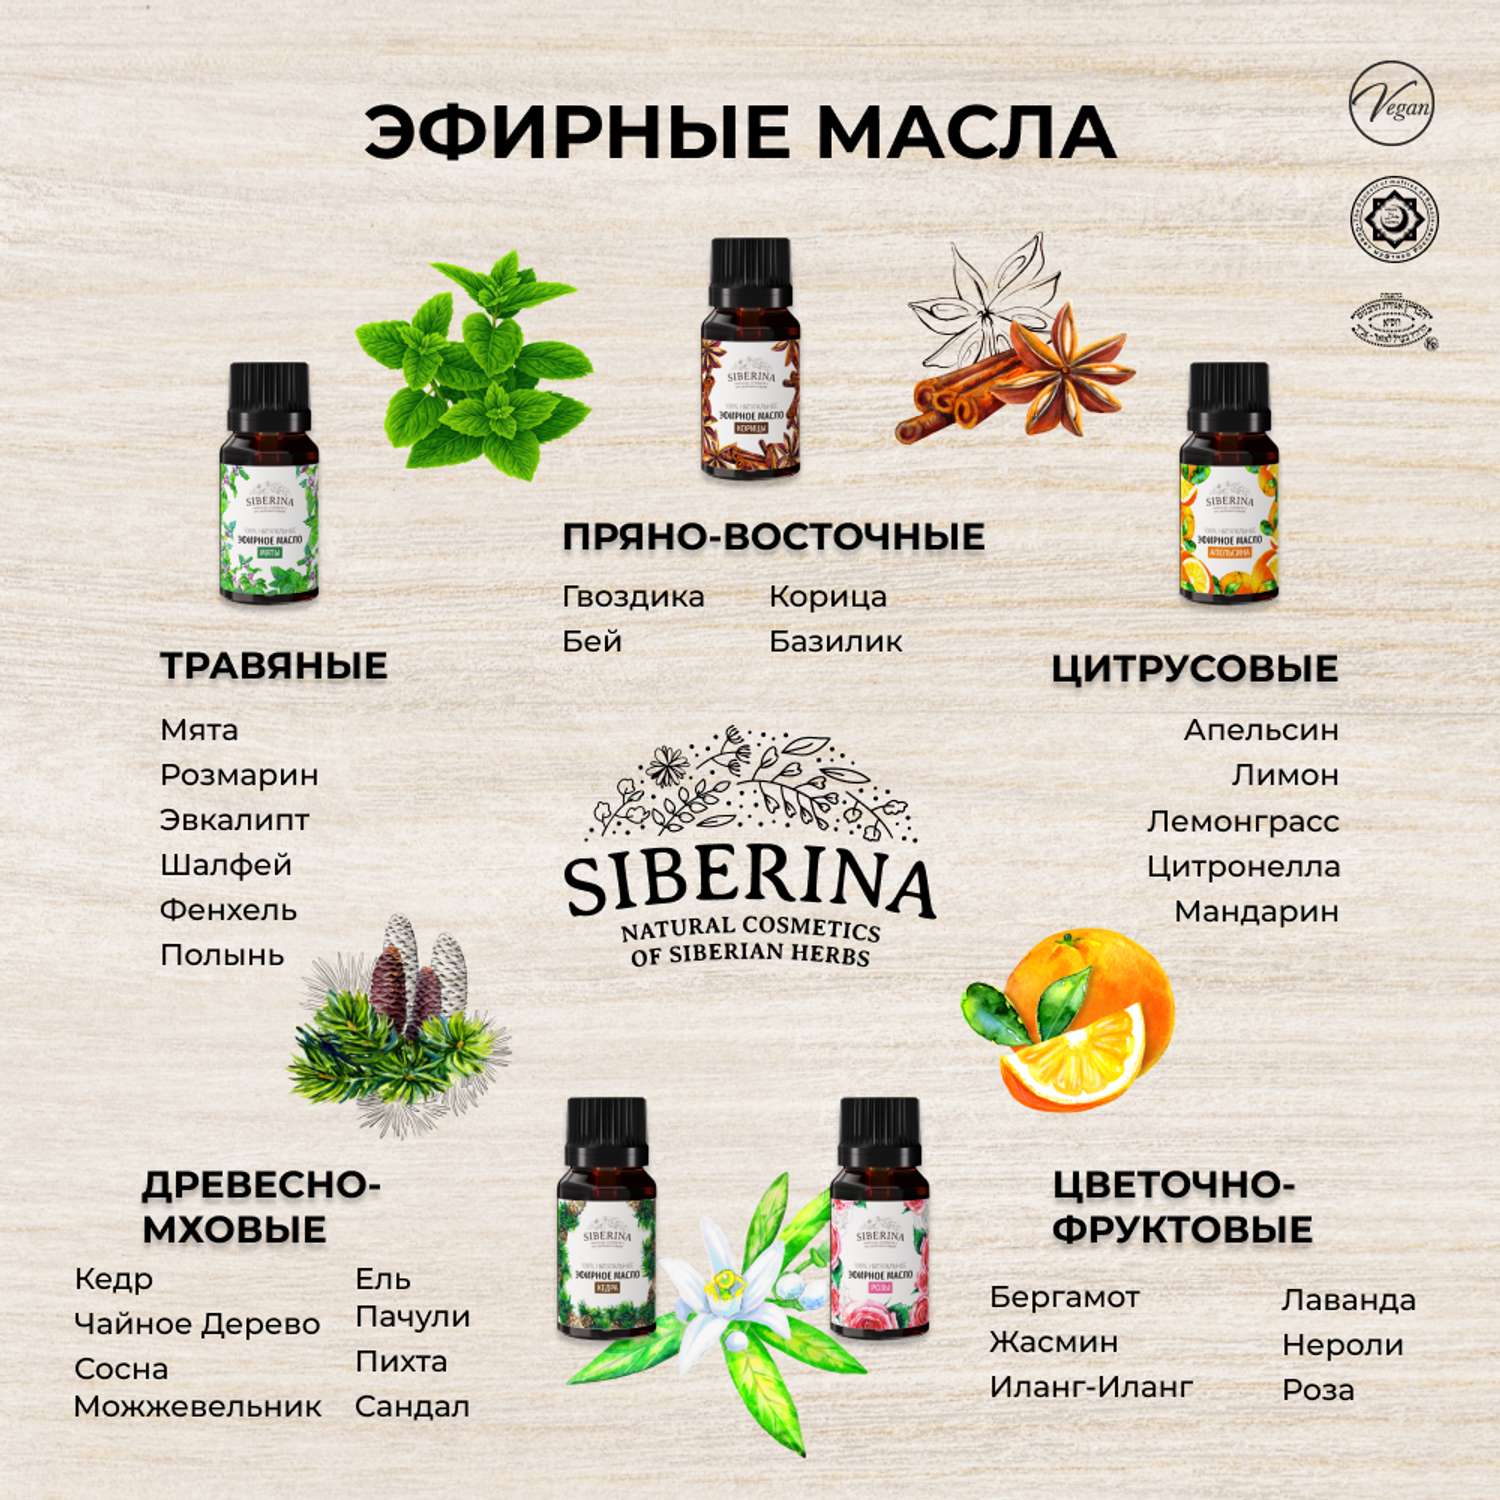 Эфирное масло Siberina натуральное «Полыни» для тела и ароматерапии 8 мл - фото 9